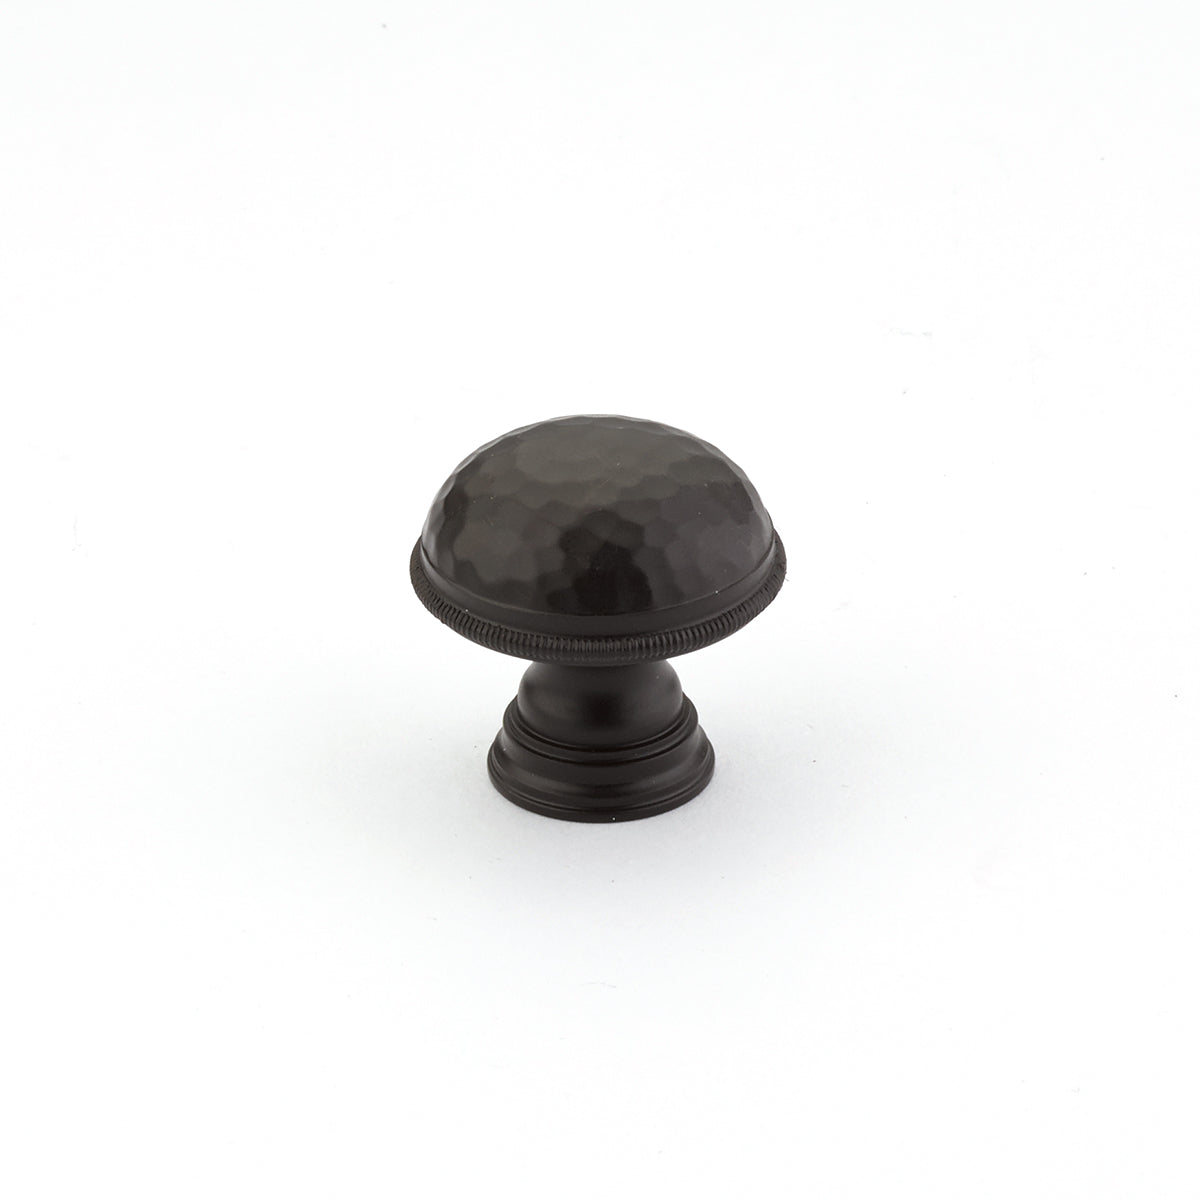 oil rubbed bronze cabinet knob